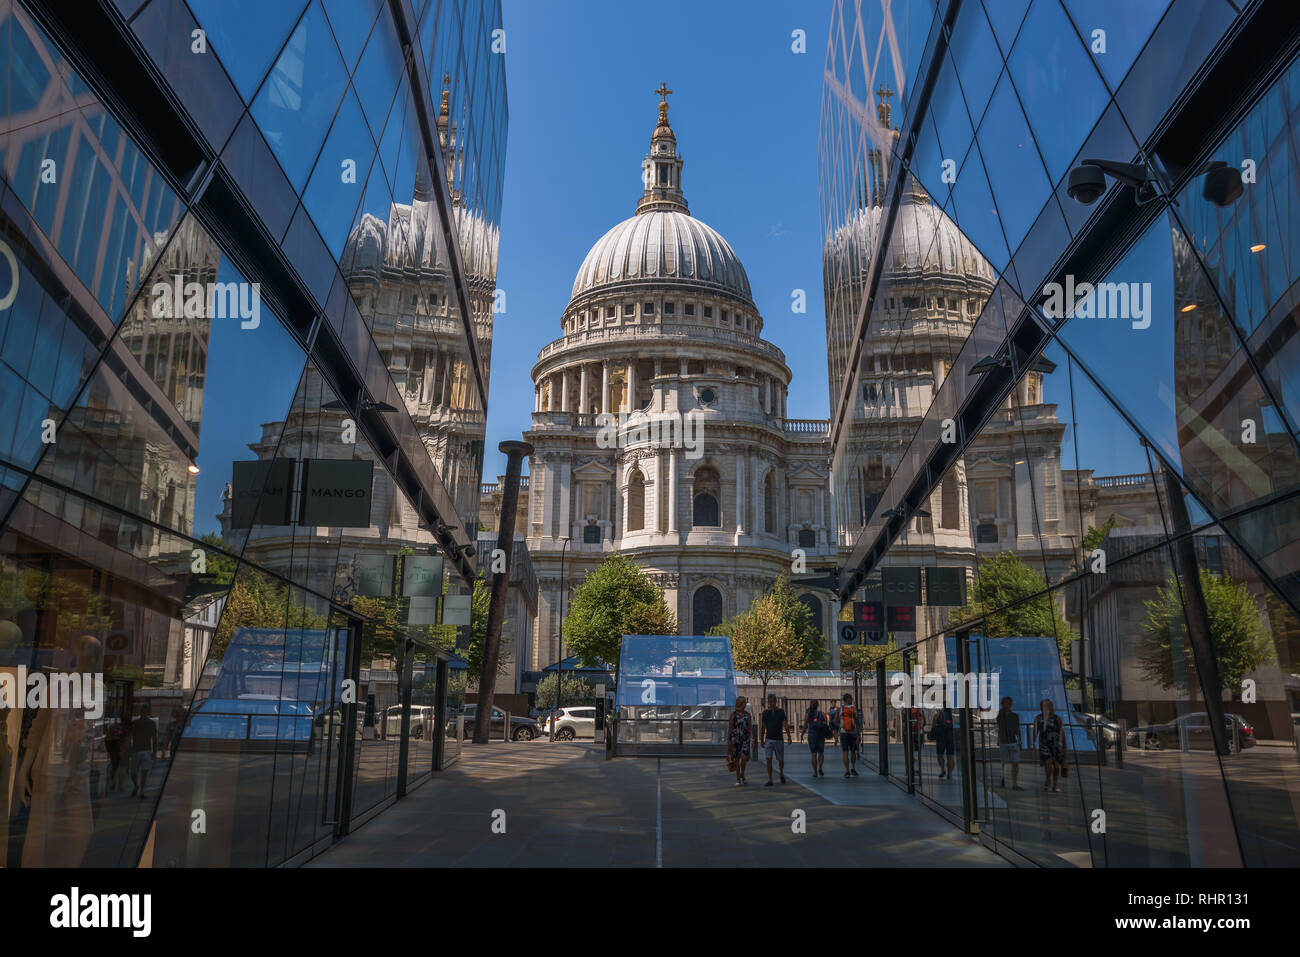 Die Kuppel der St. Paul's Kathedrale und seine Reflexion auf Glasscheiben von einem neuen Einkaufszentrum. London, Vereinigtes Königreich. Stockfoto